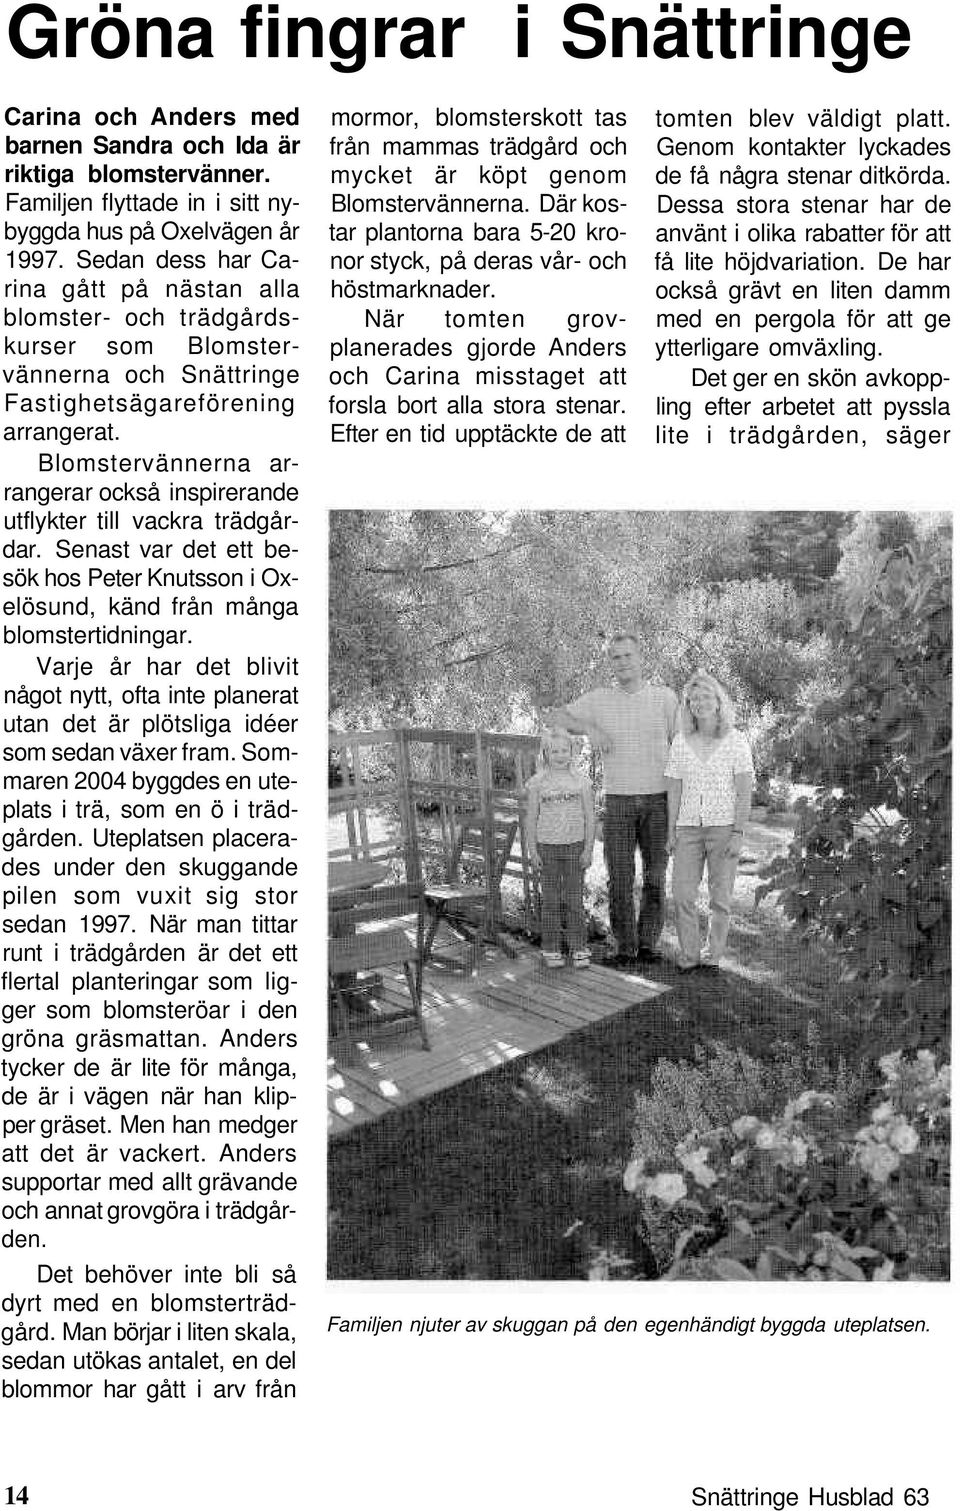 Blomstervännerna arrangerar också inspirerande utflykter till vackra trädgårdar. Senast var det ett besök hos Peter Knutsson i Oxelösund, känd från många blomstertidningar.